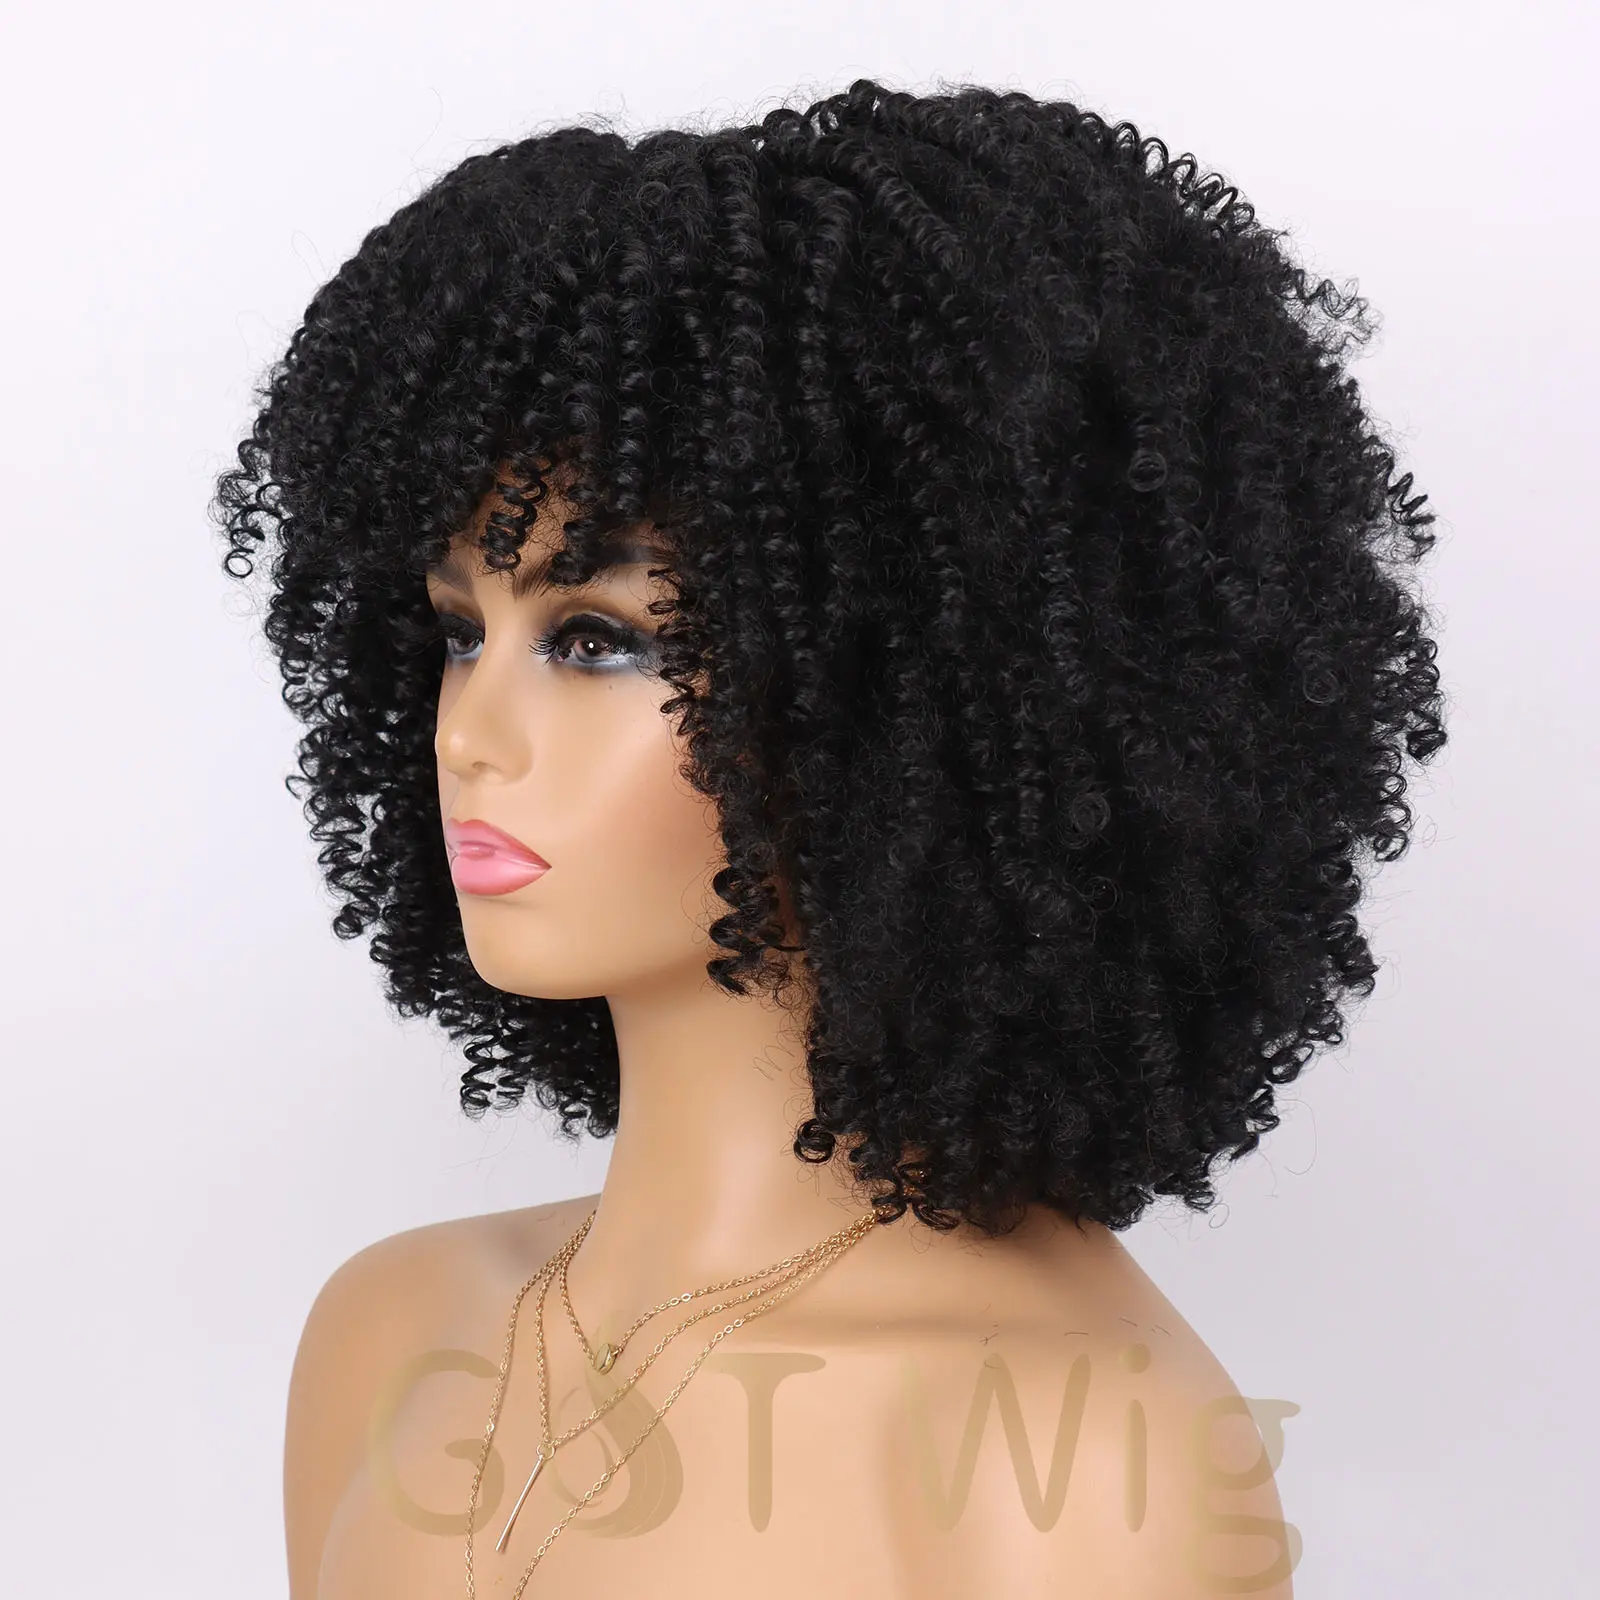 G & T 가발 도매 짧은 곱슬 흑인 여성을위한 앞머리가있는 아프리카 변태 곱슬 가발 합성 섬유 헤어 가발 매일 파티 사용